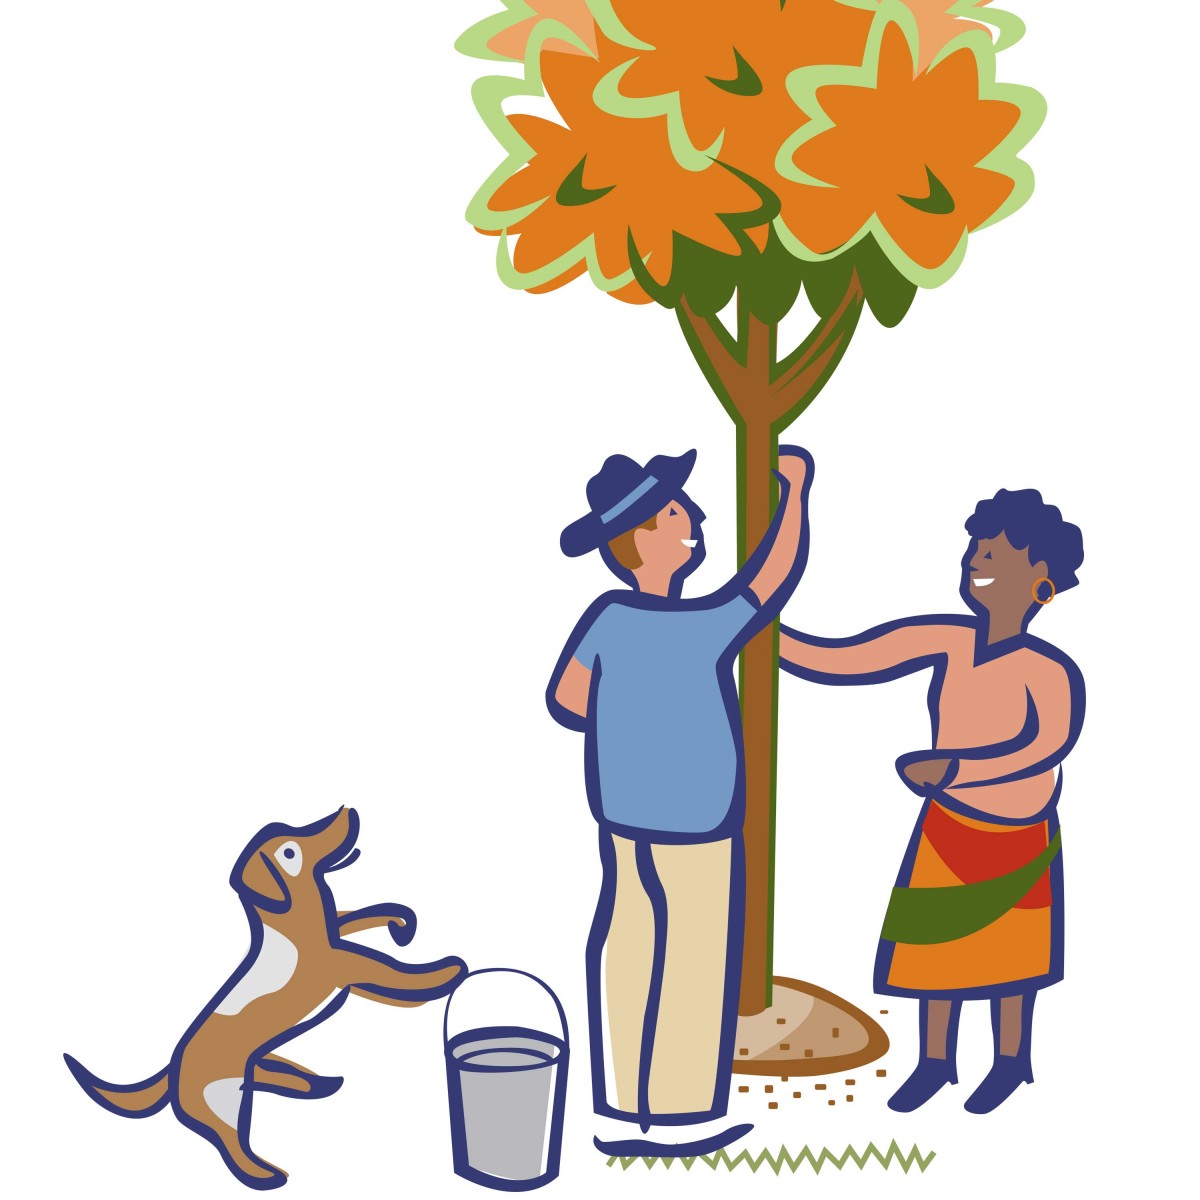 Tree People illustration